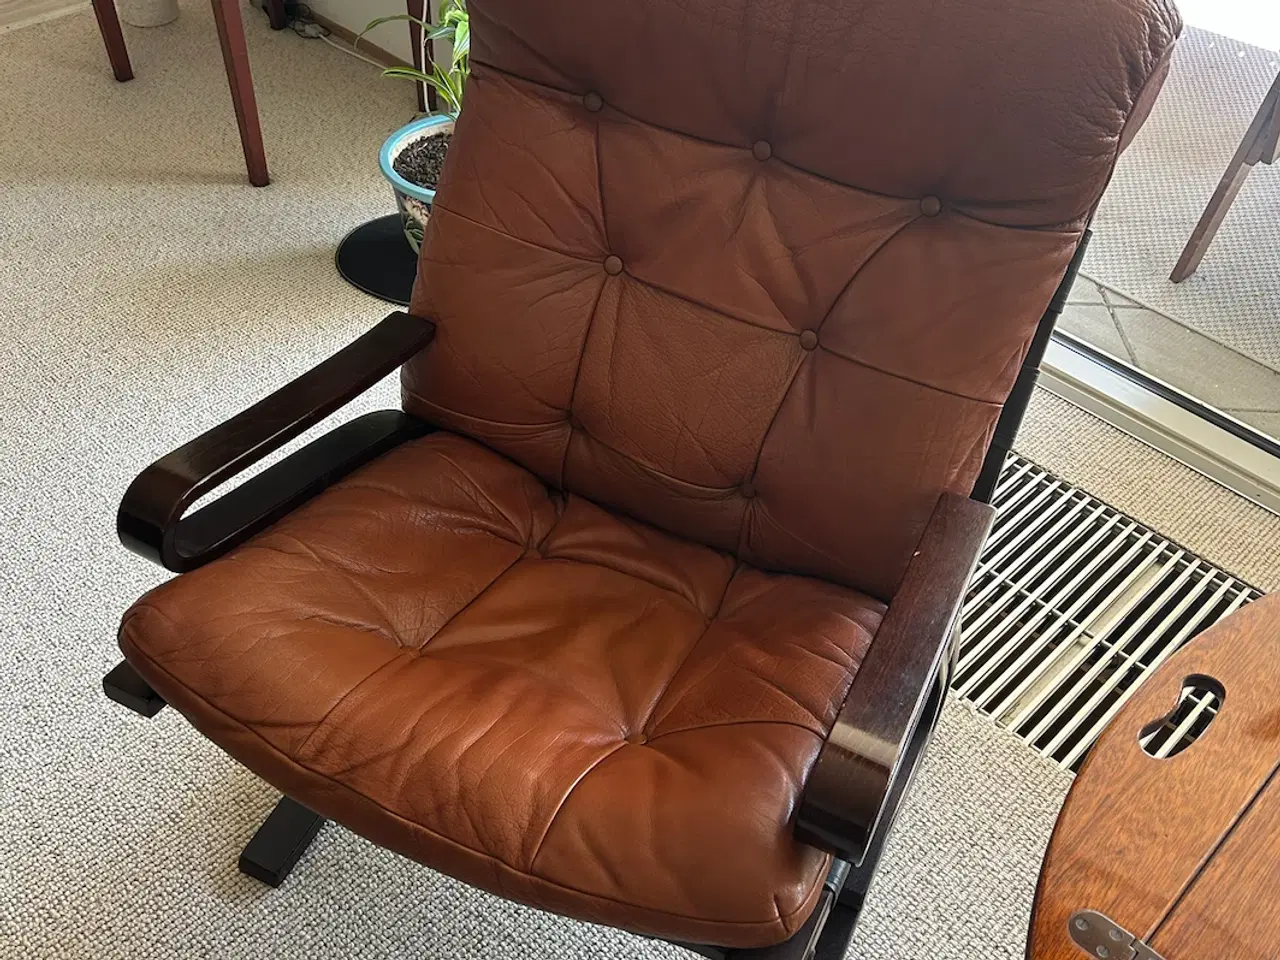 Billede 3 - To læderlænestole, en fodskammel og et træbord